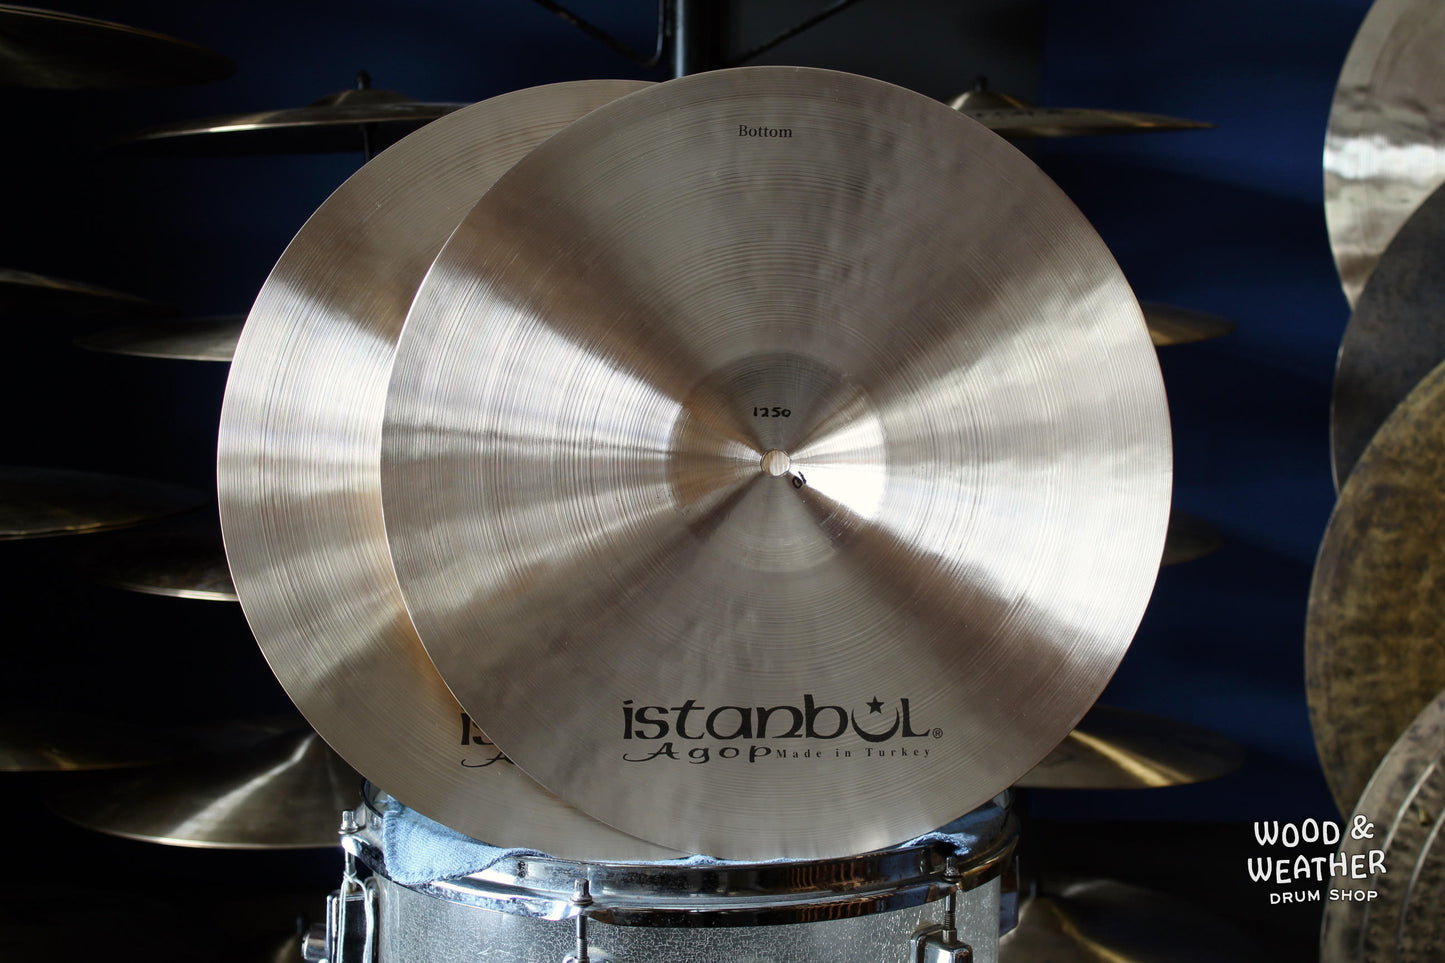 Istanbul Agop 15" Xist Natural Hi-Hat Cymbals 1070/1250g